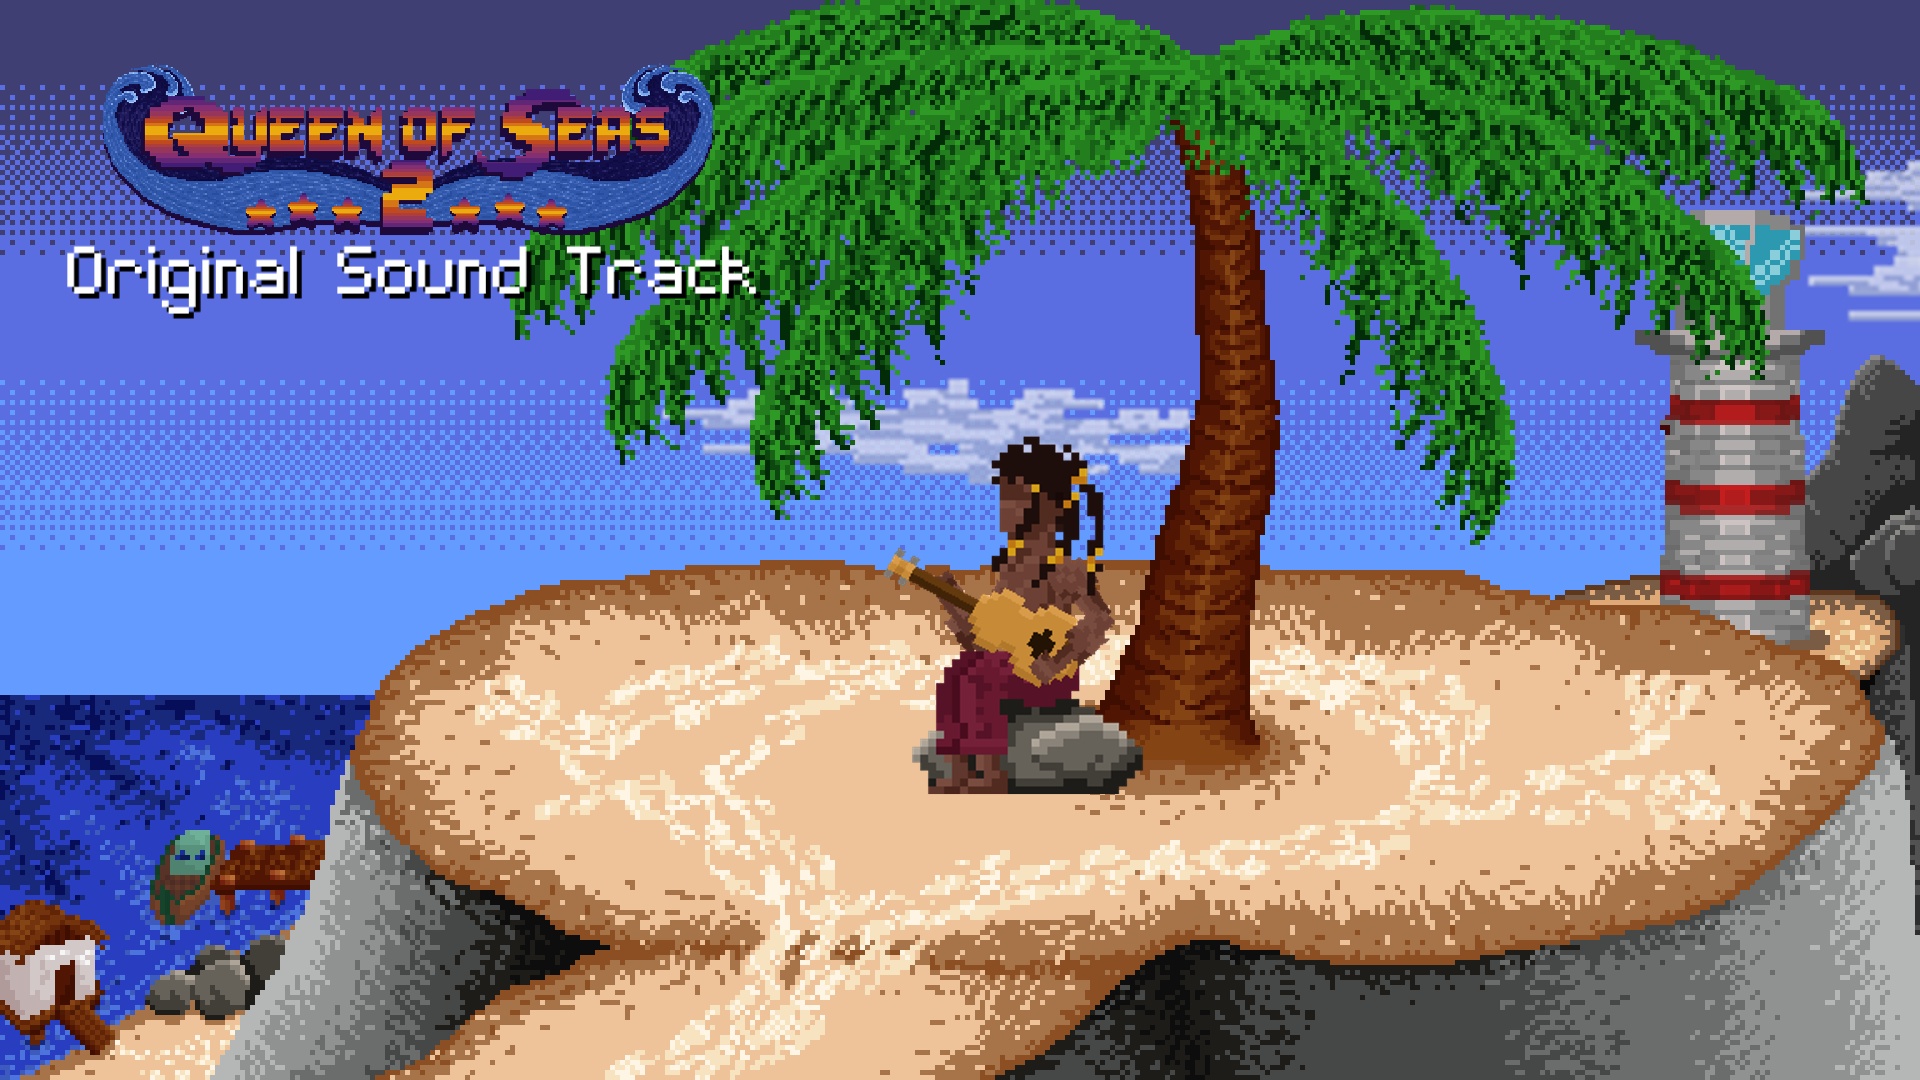 Queen of Seas 2 - Original Sound Track screenshot